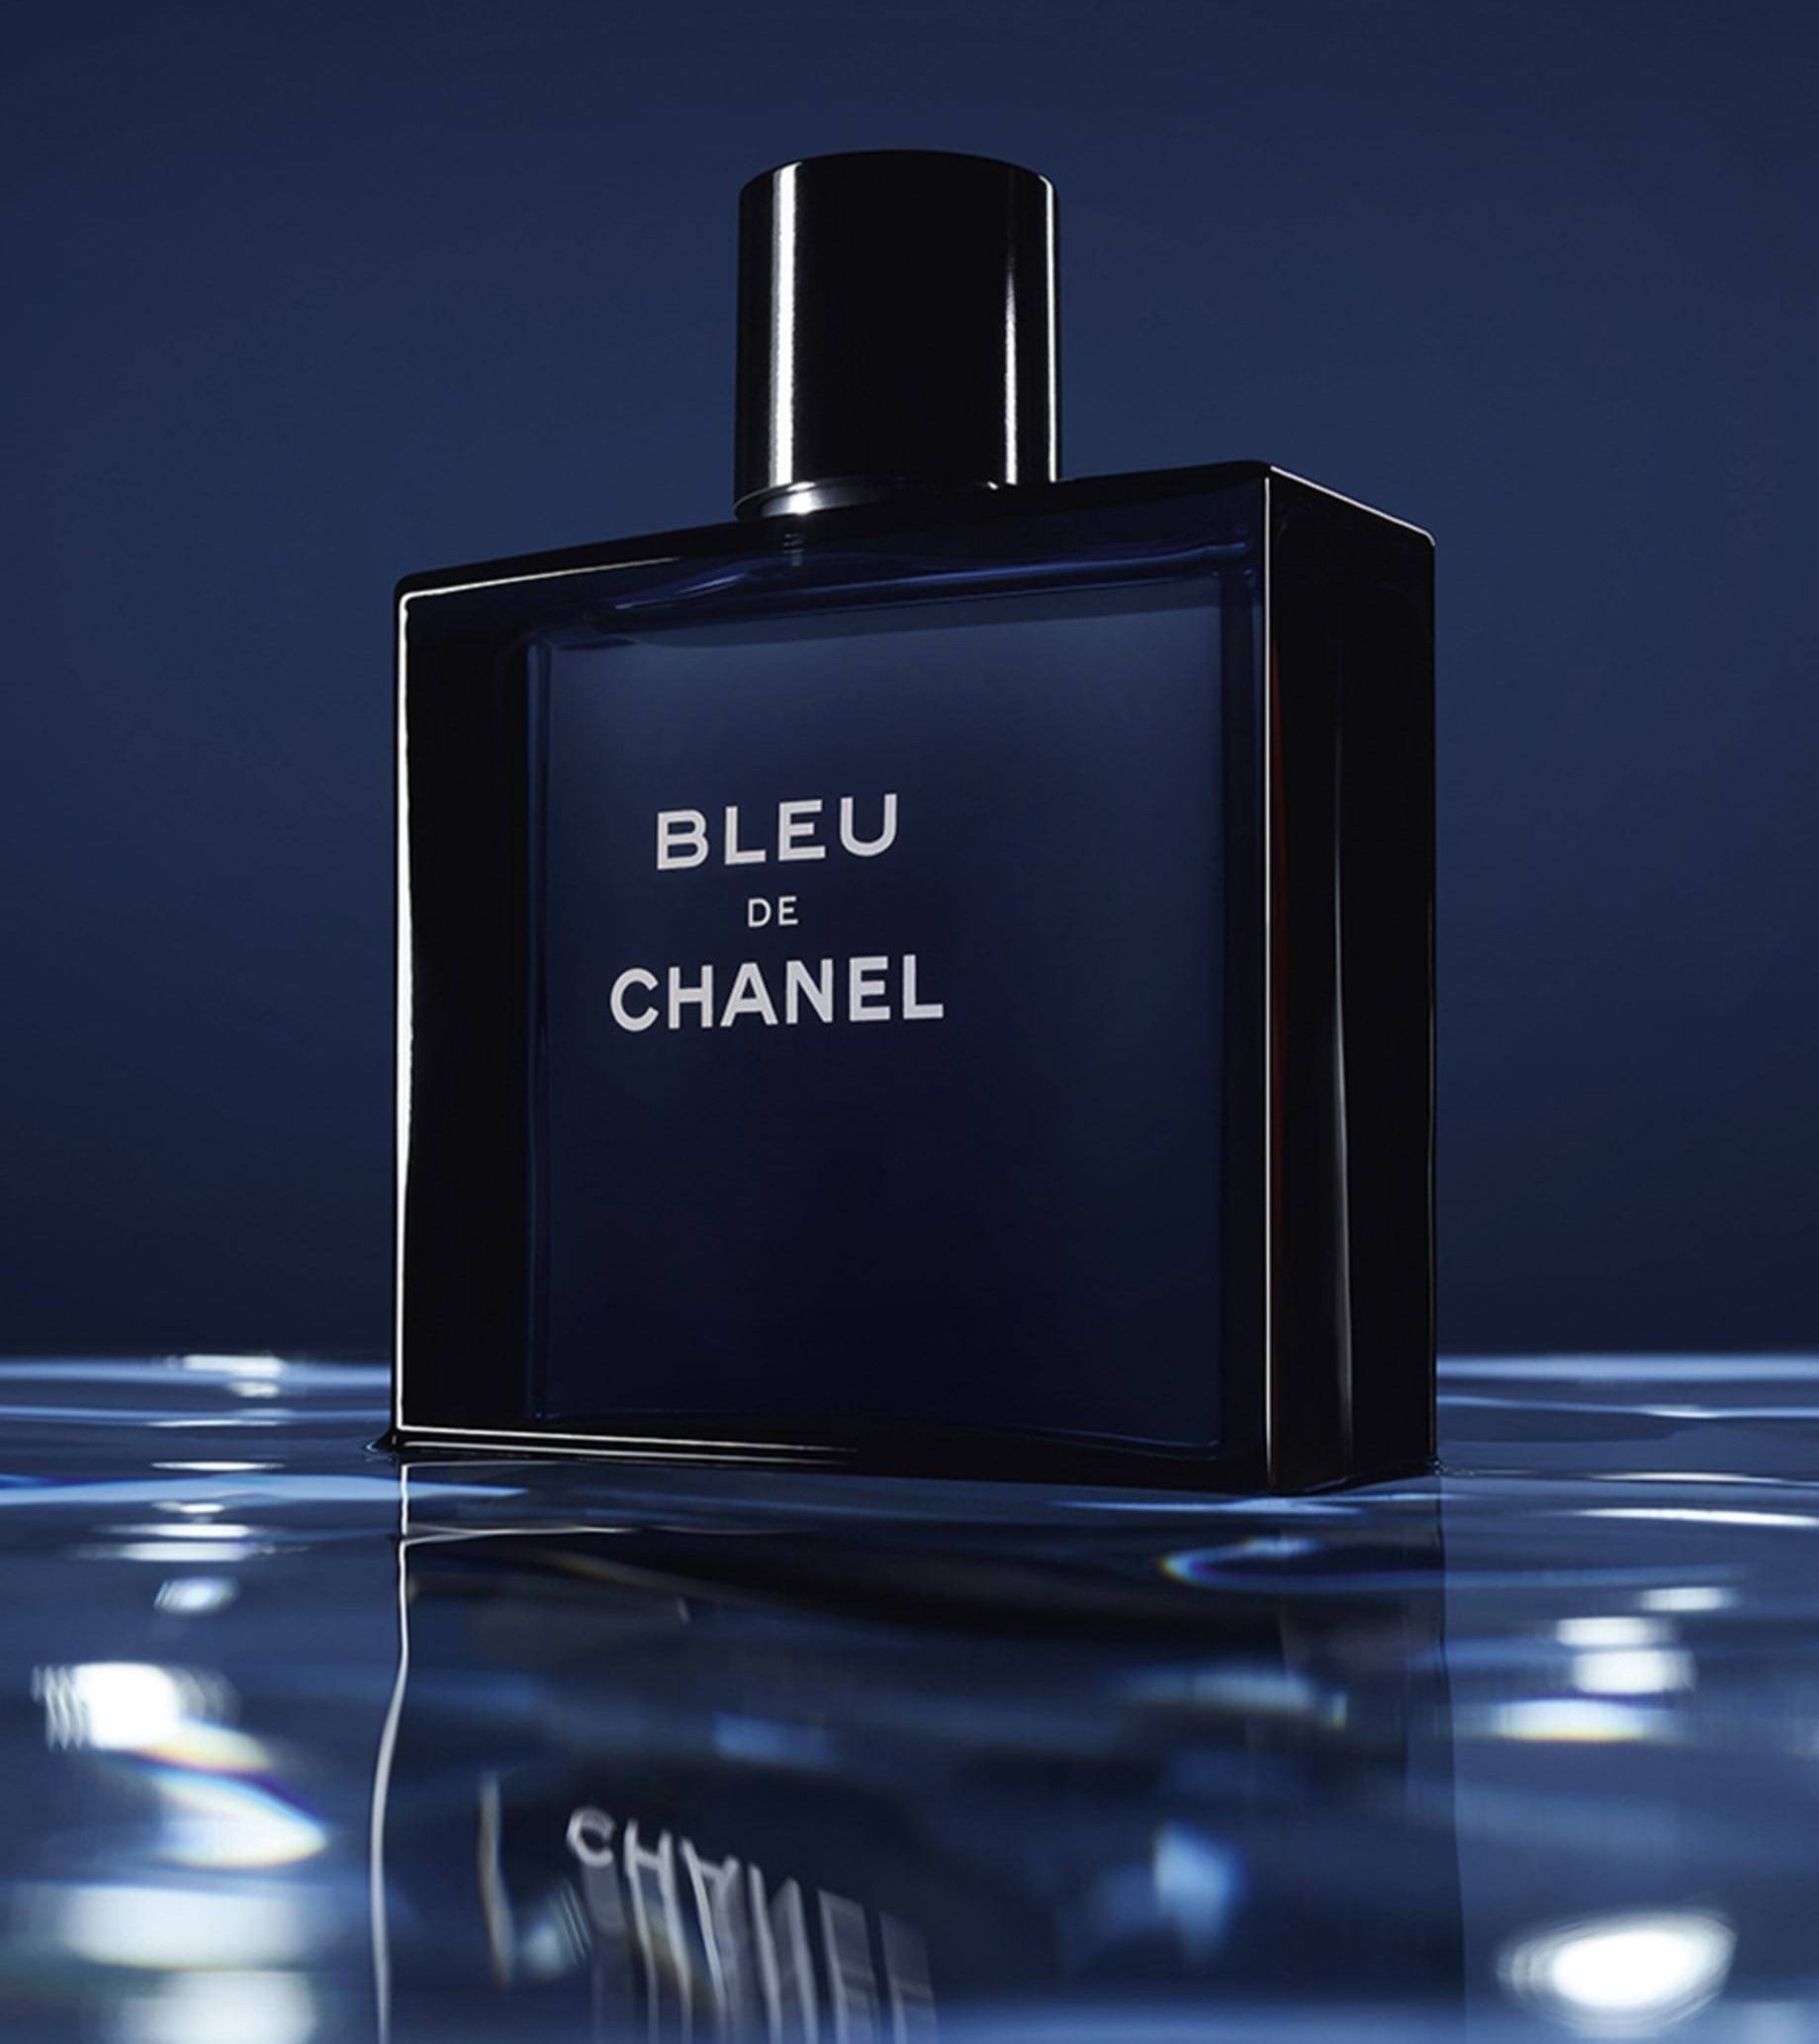 Bleu de chanel for men - eau de parfum, 100ml price in Egypt